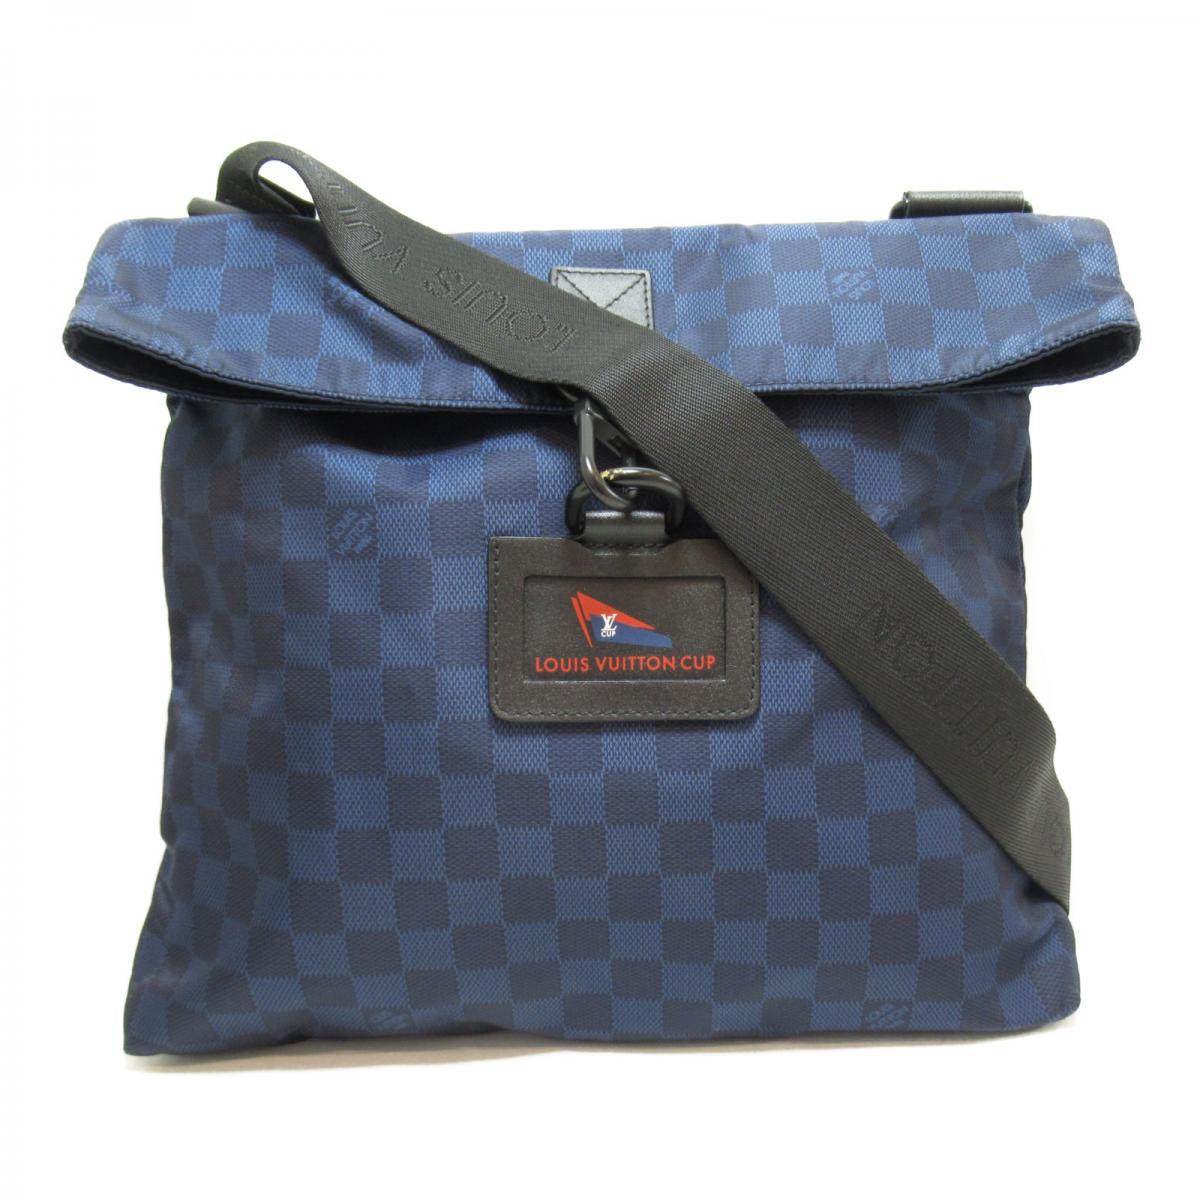 LOUIS VUITTON N41251 LV Cup Alize Damier Crossbody Shoulder Bag